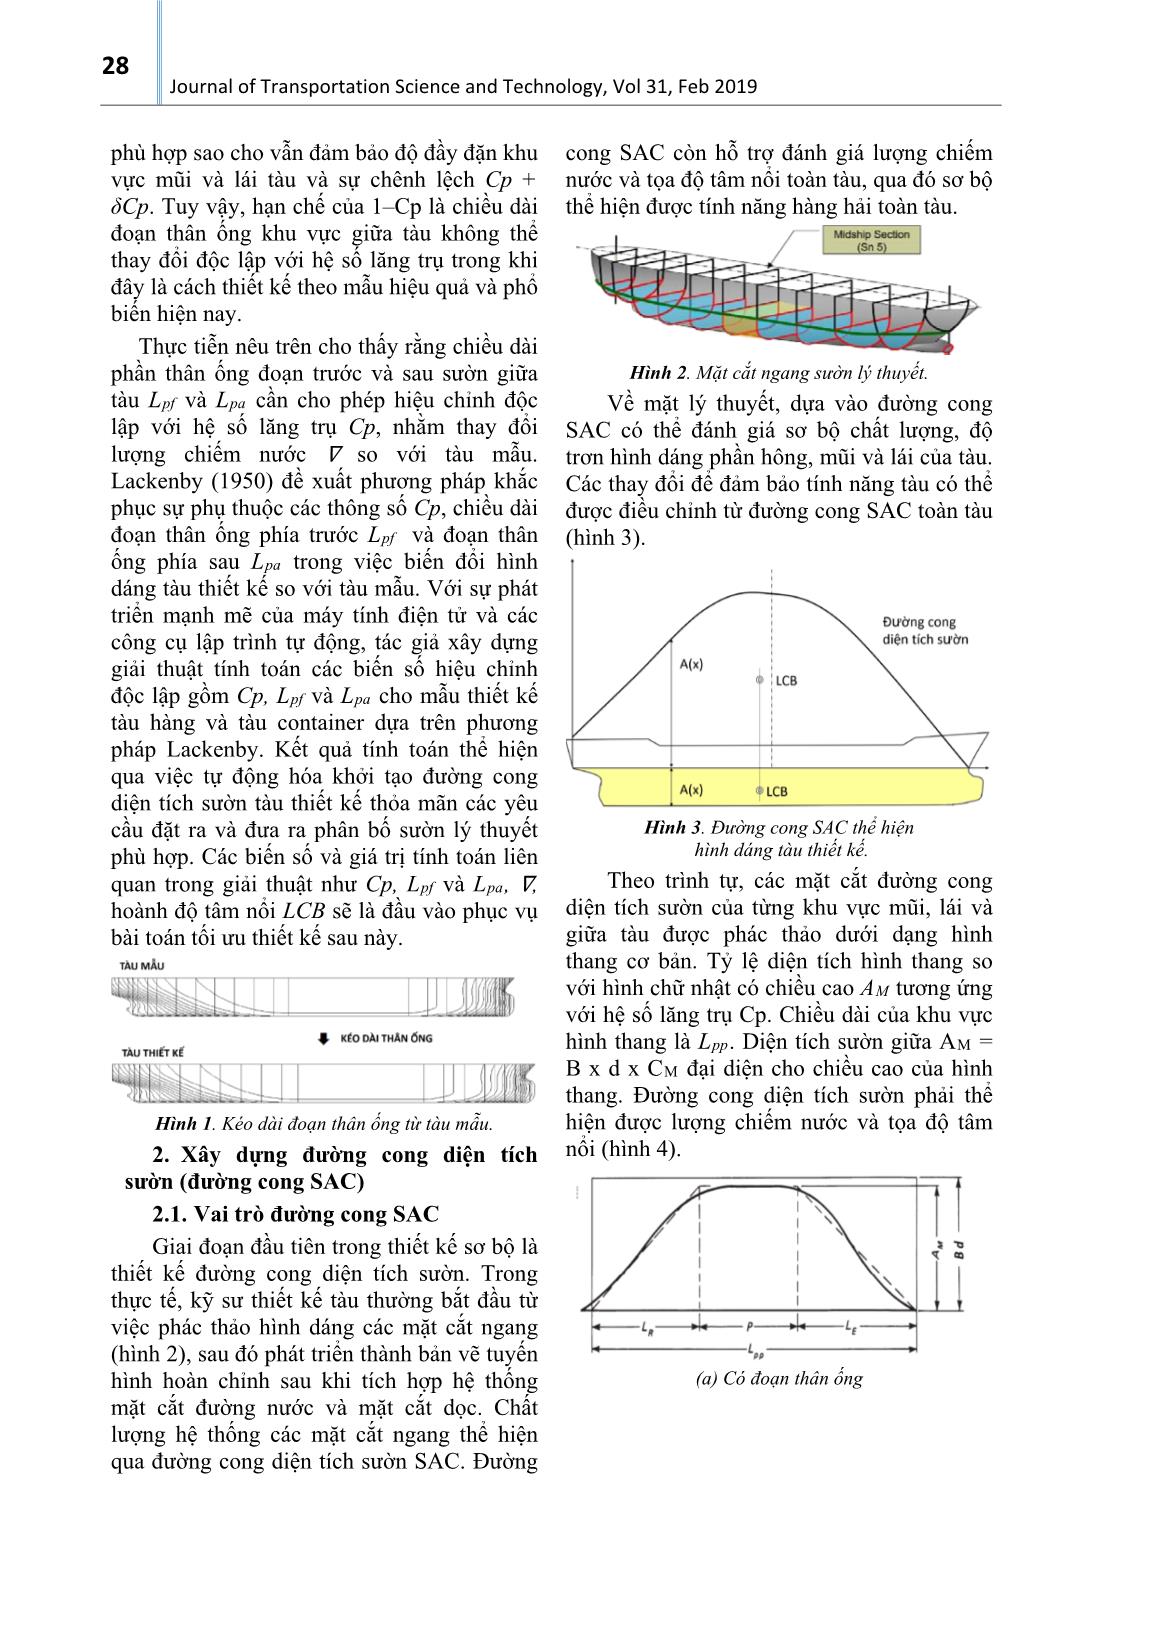 Tự động hóa biến đổi thông số hình dáng tàu áp dụng phương pháp Lackenby trang 2